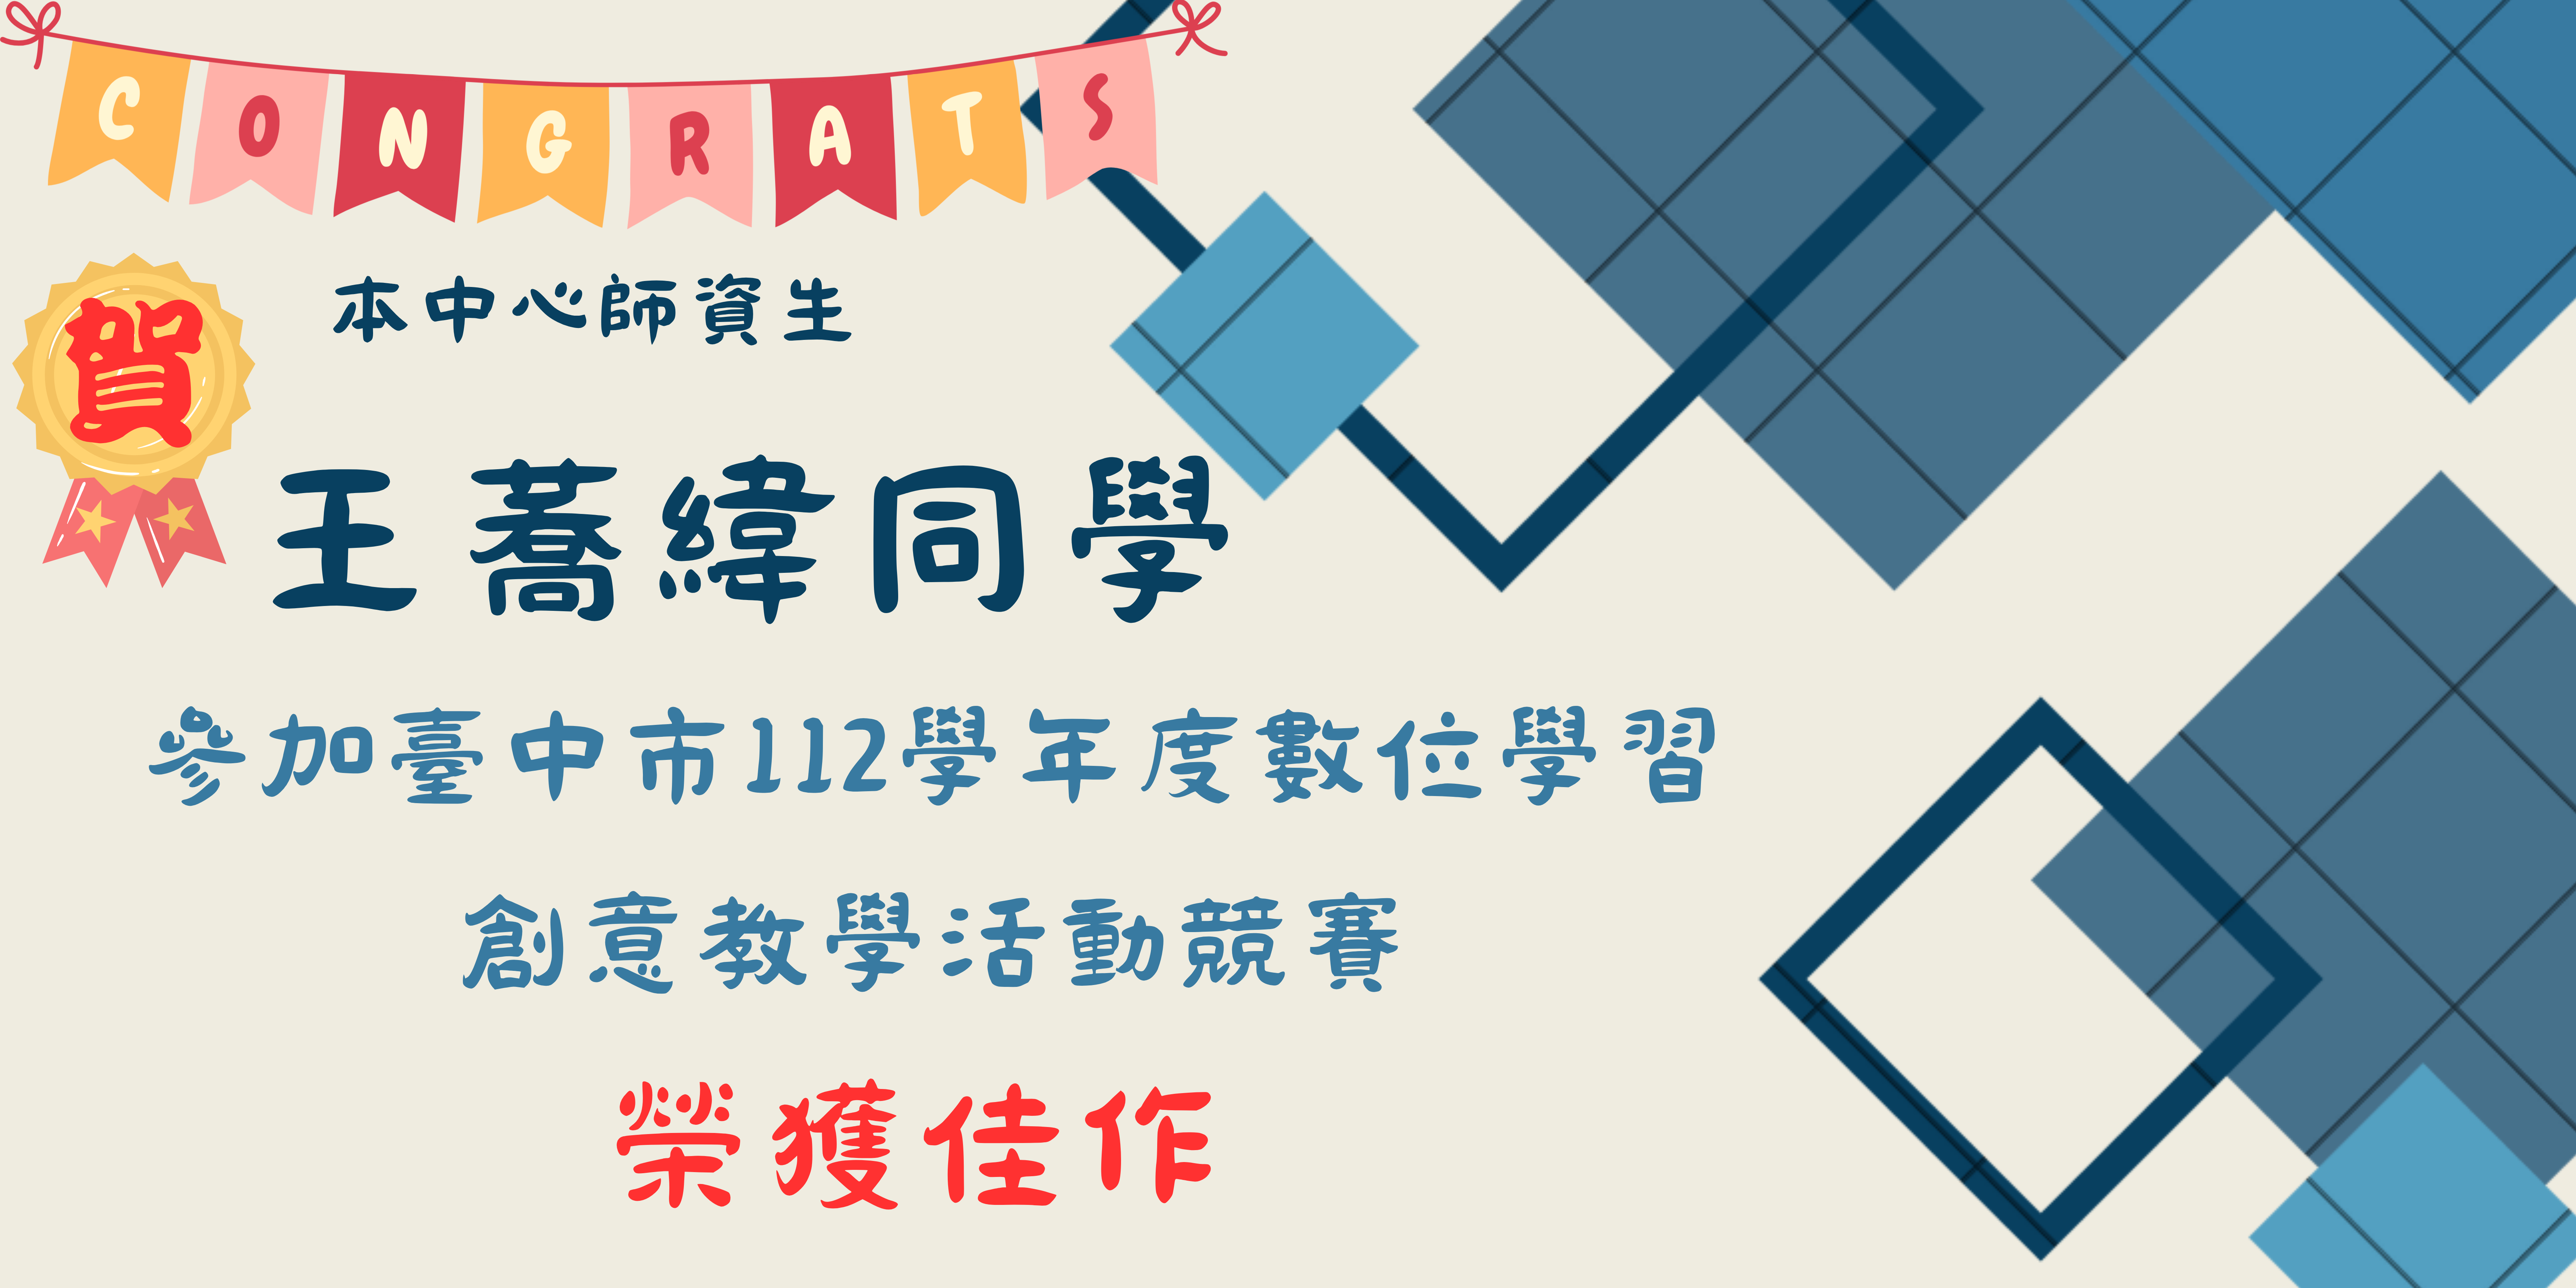 王蕎緯參加臺中市112學年度數位學習創意教學活動競賽，榮獲佳作